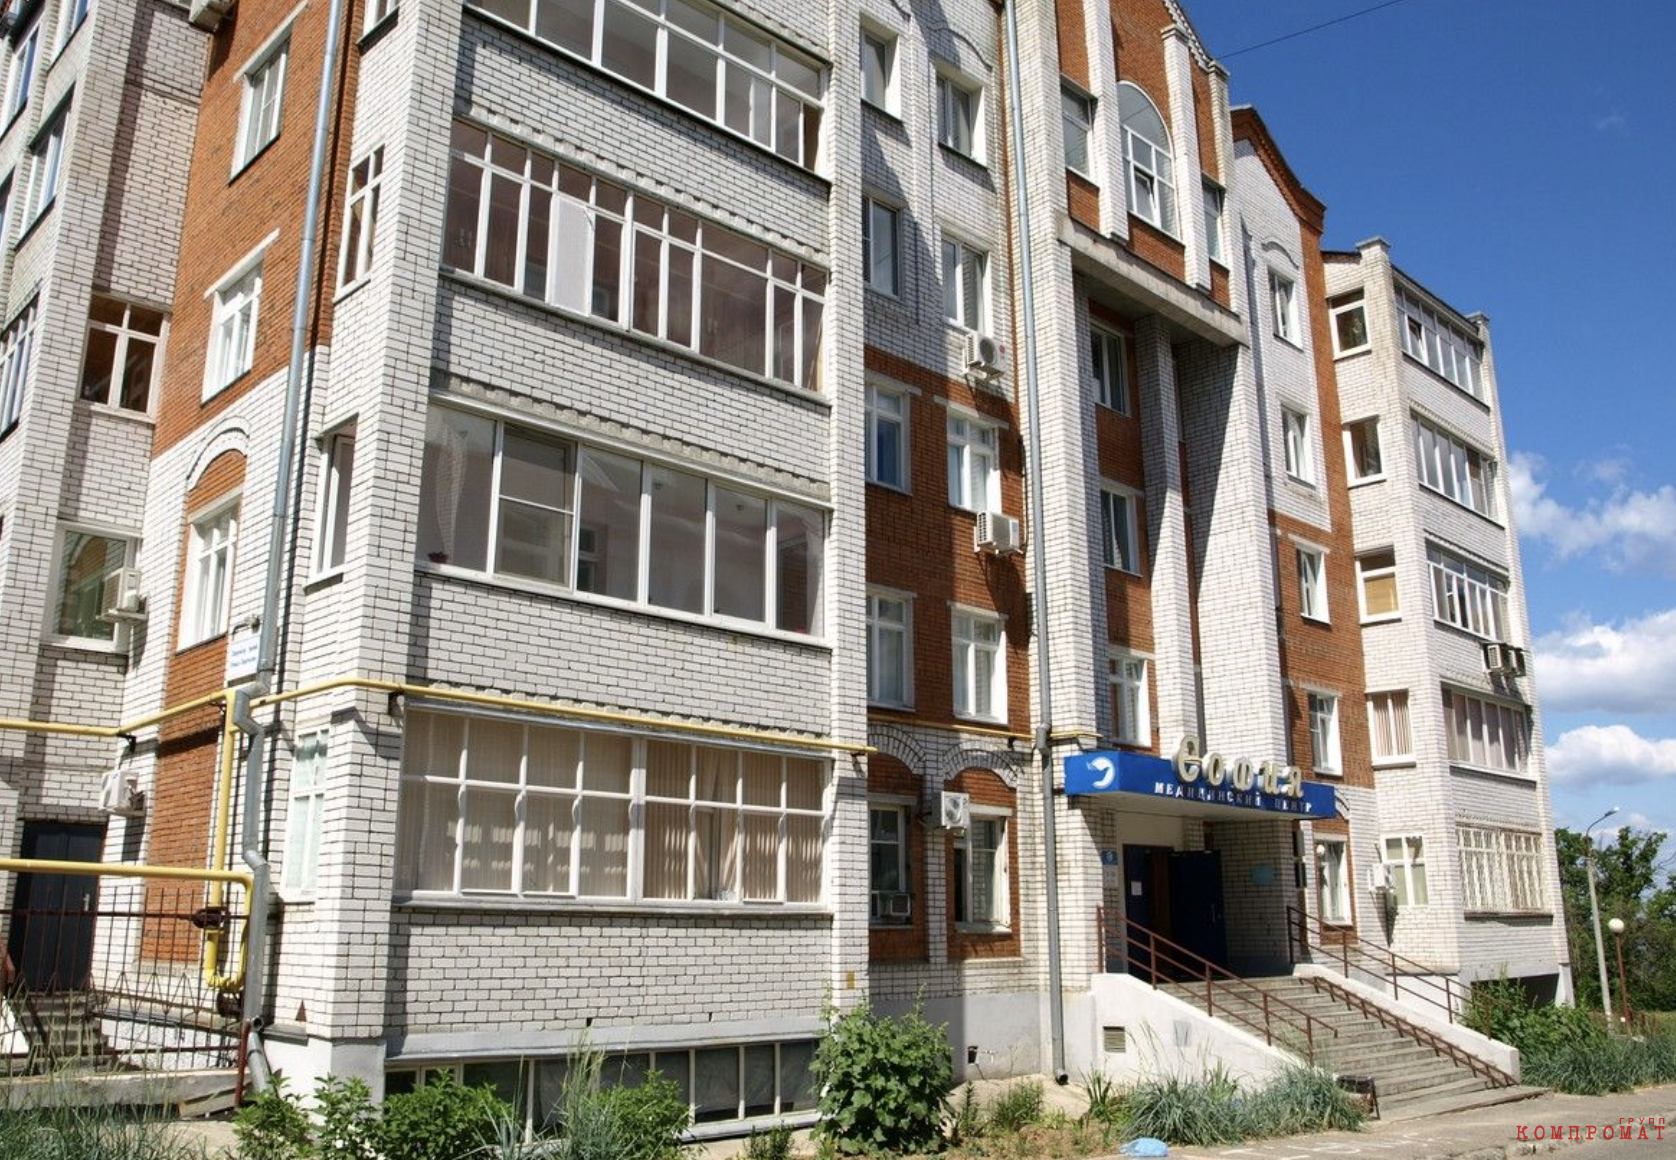 Кирпичная пятиэтажка на улице Никиты Сверчкова в Чебоксарах.